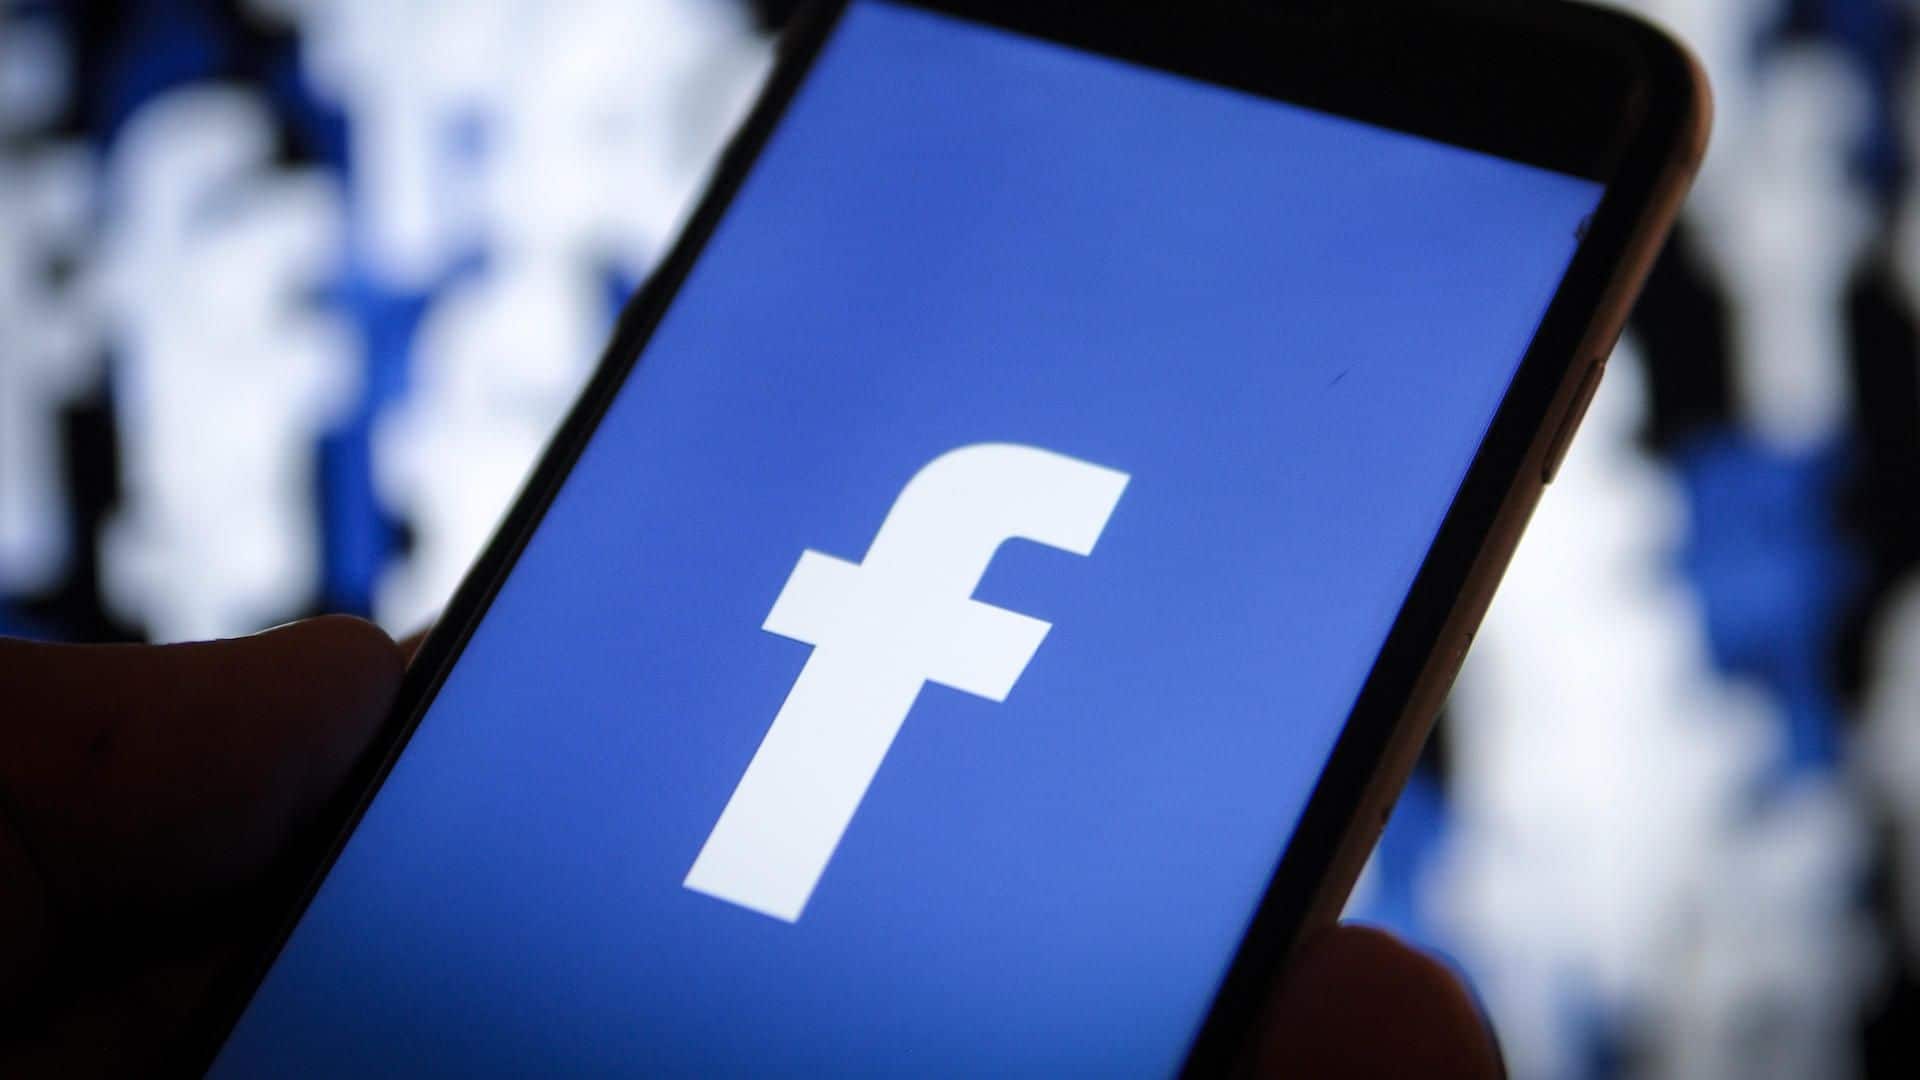 Truque do Facebook: como fazer para que nenhum estranho encontre seu perfil